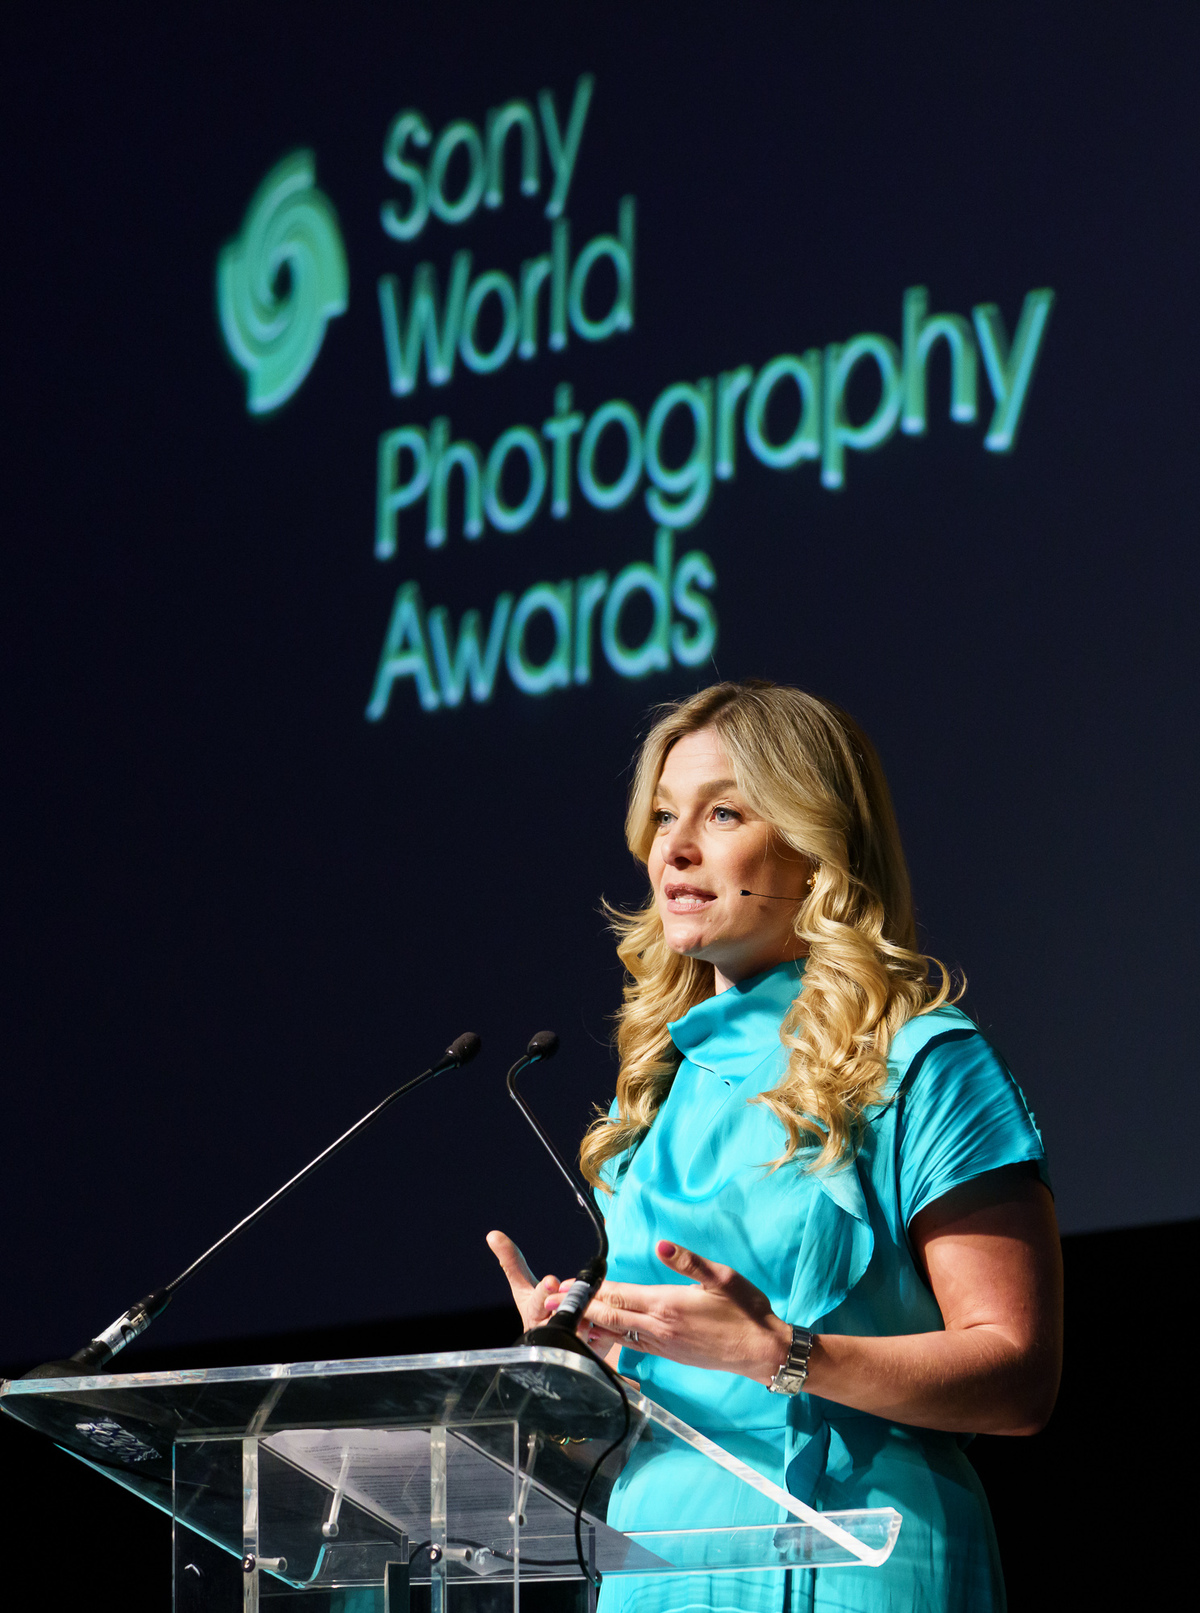 Sony World Photography Awards